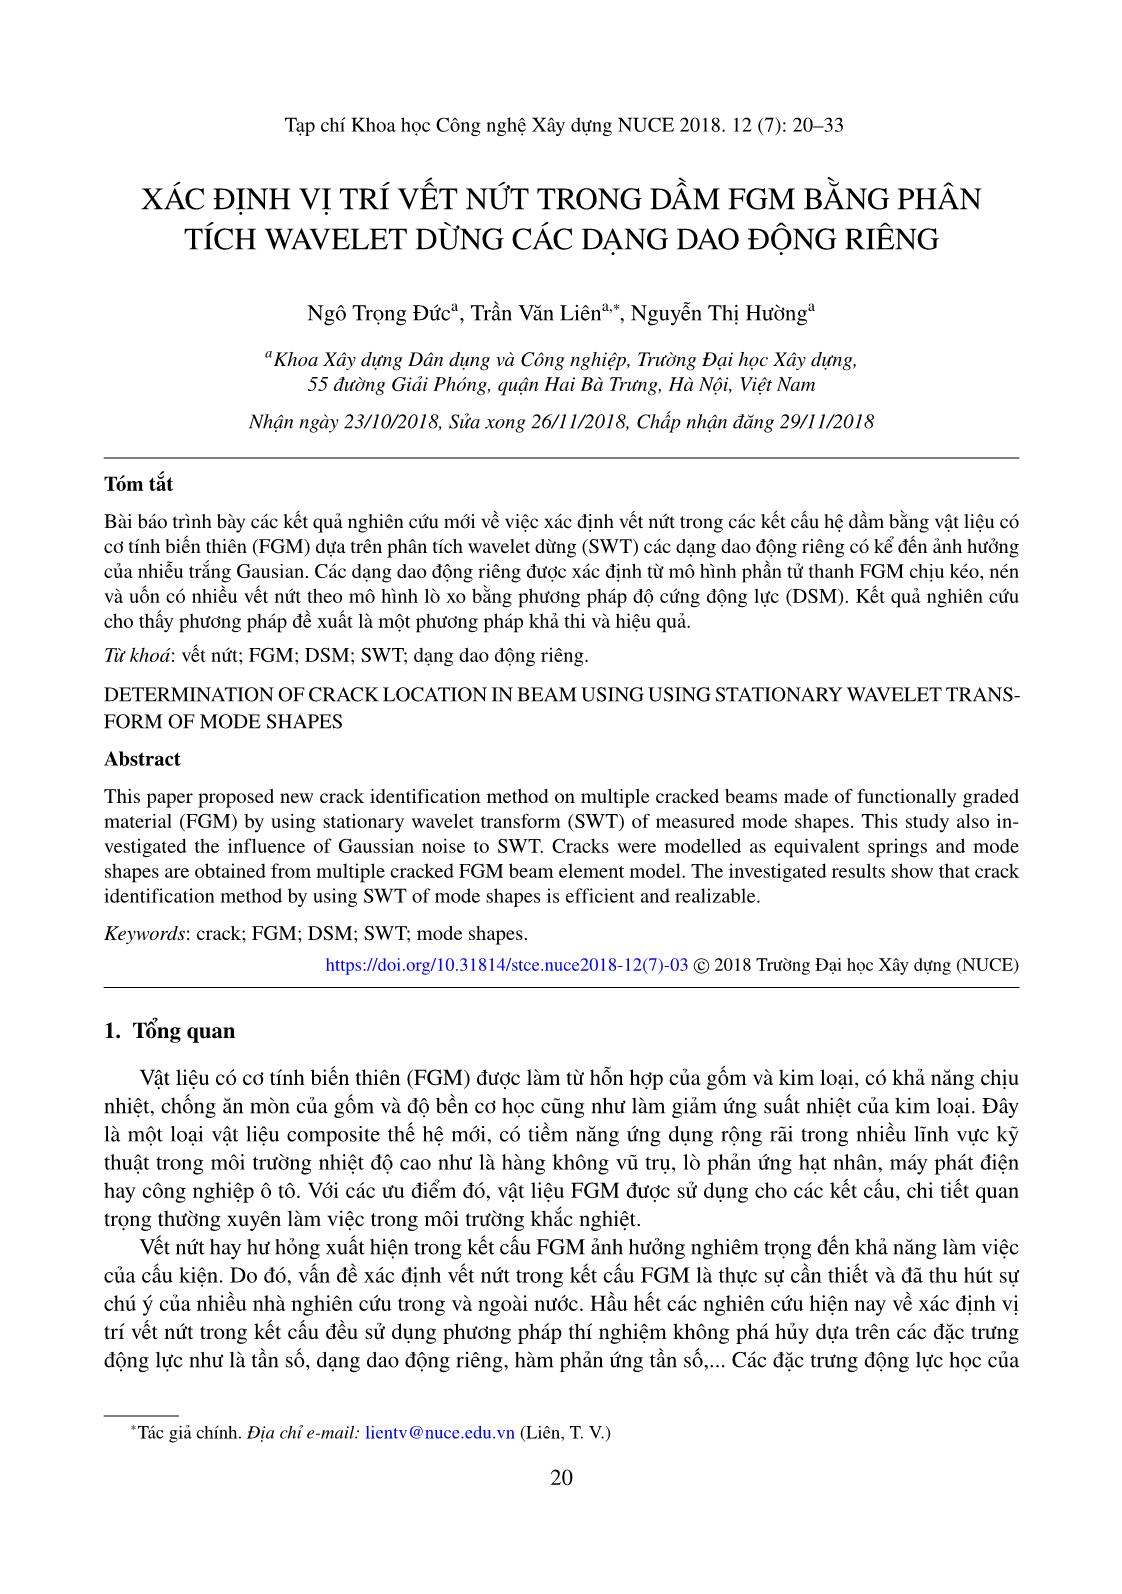 Xác định vị trí vết nứt trong dầm FGM bằng phân tích Wavelet dừng các dạng dao động riêng trang 1